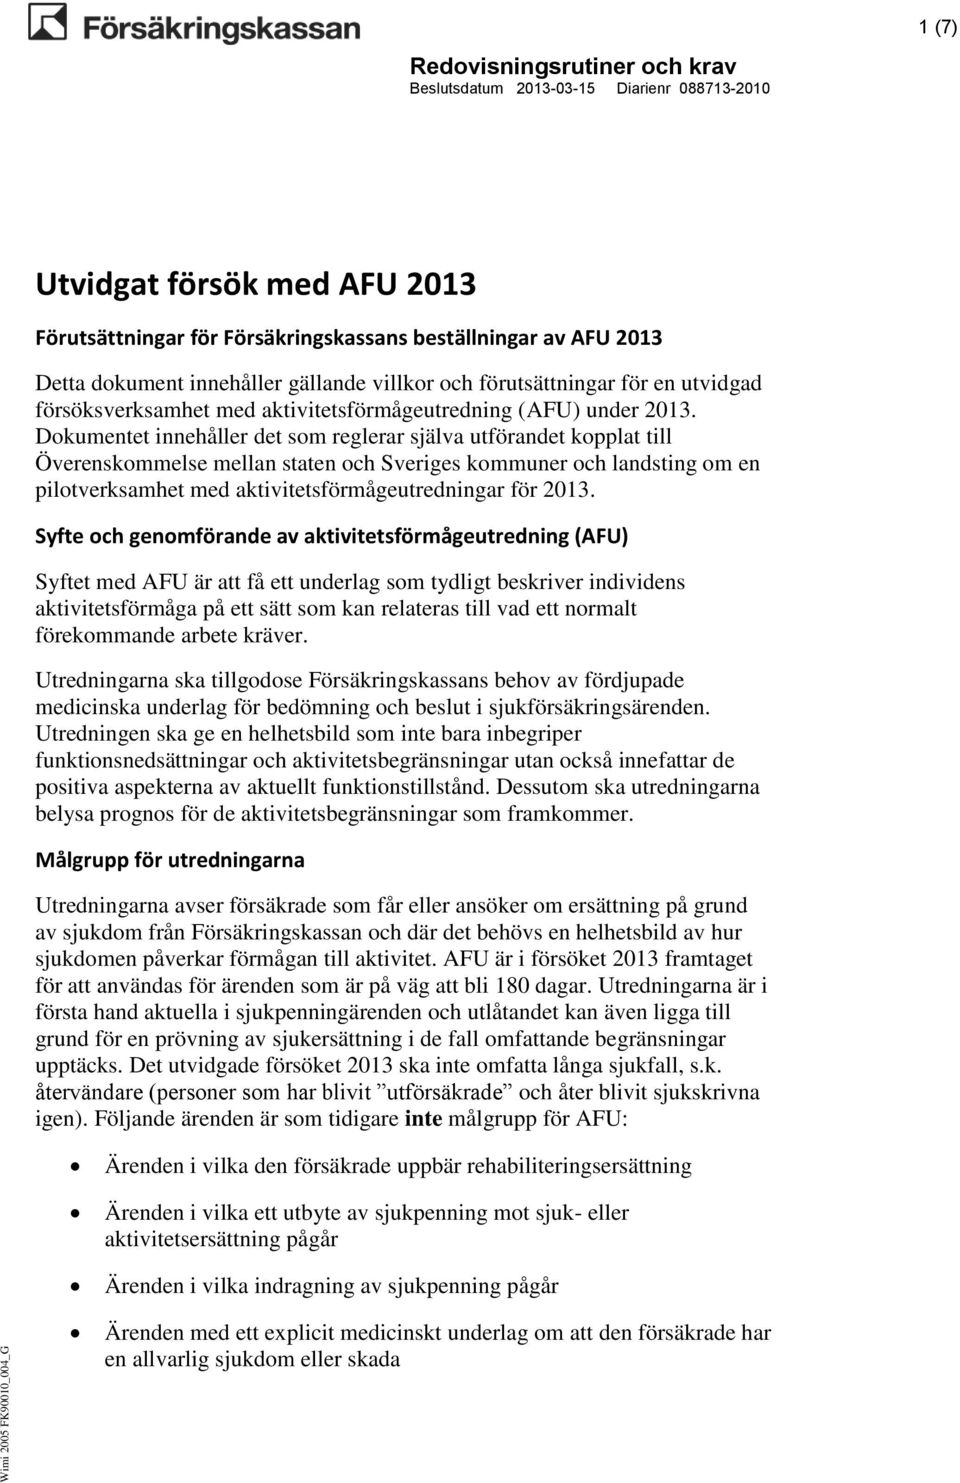 Dokumentet innehåller det som reglerar själva utförandet kopplat till Överenskommelse mellan staten och Sveriges kommuner och landsting om en pilotverksamhet med aktivitetsförmågeutredningar för 2013.